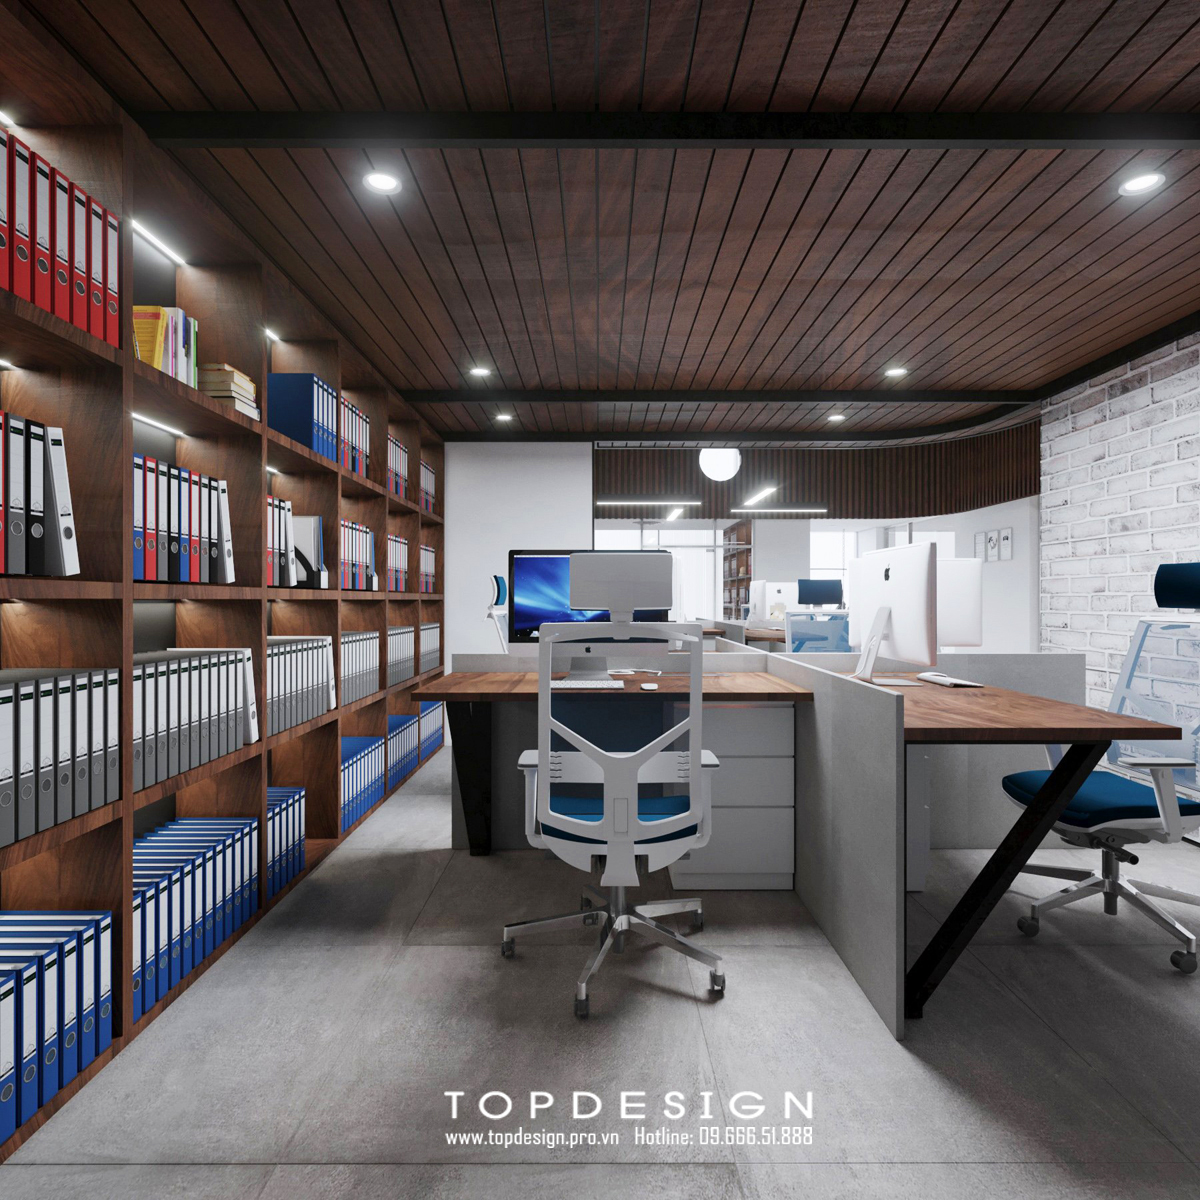 TOPDESIGN_Thiết kế nội thất văn phòng MHD_17